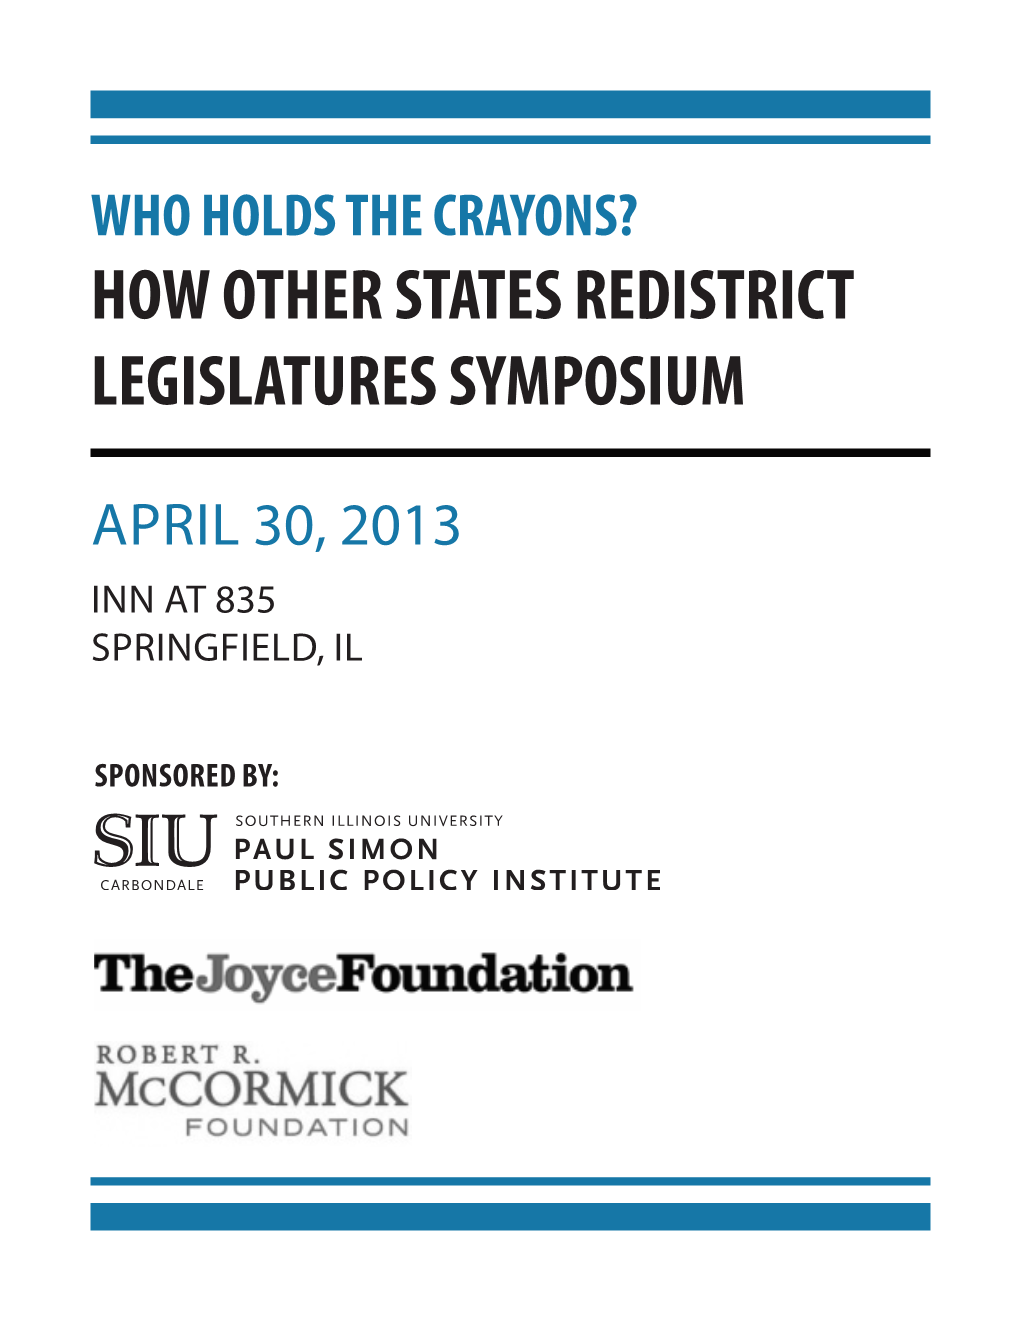 How Other States Redistrict Legislatures Symposium